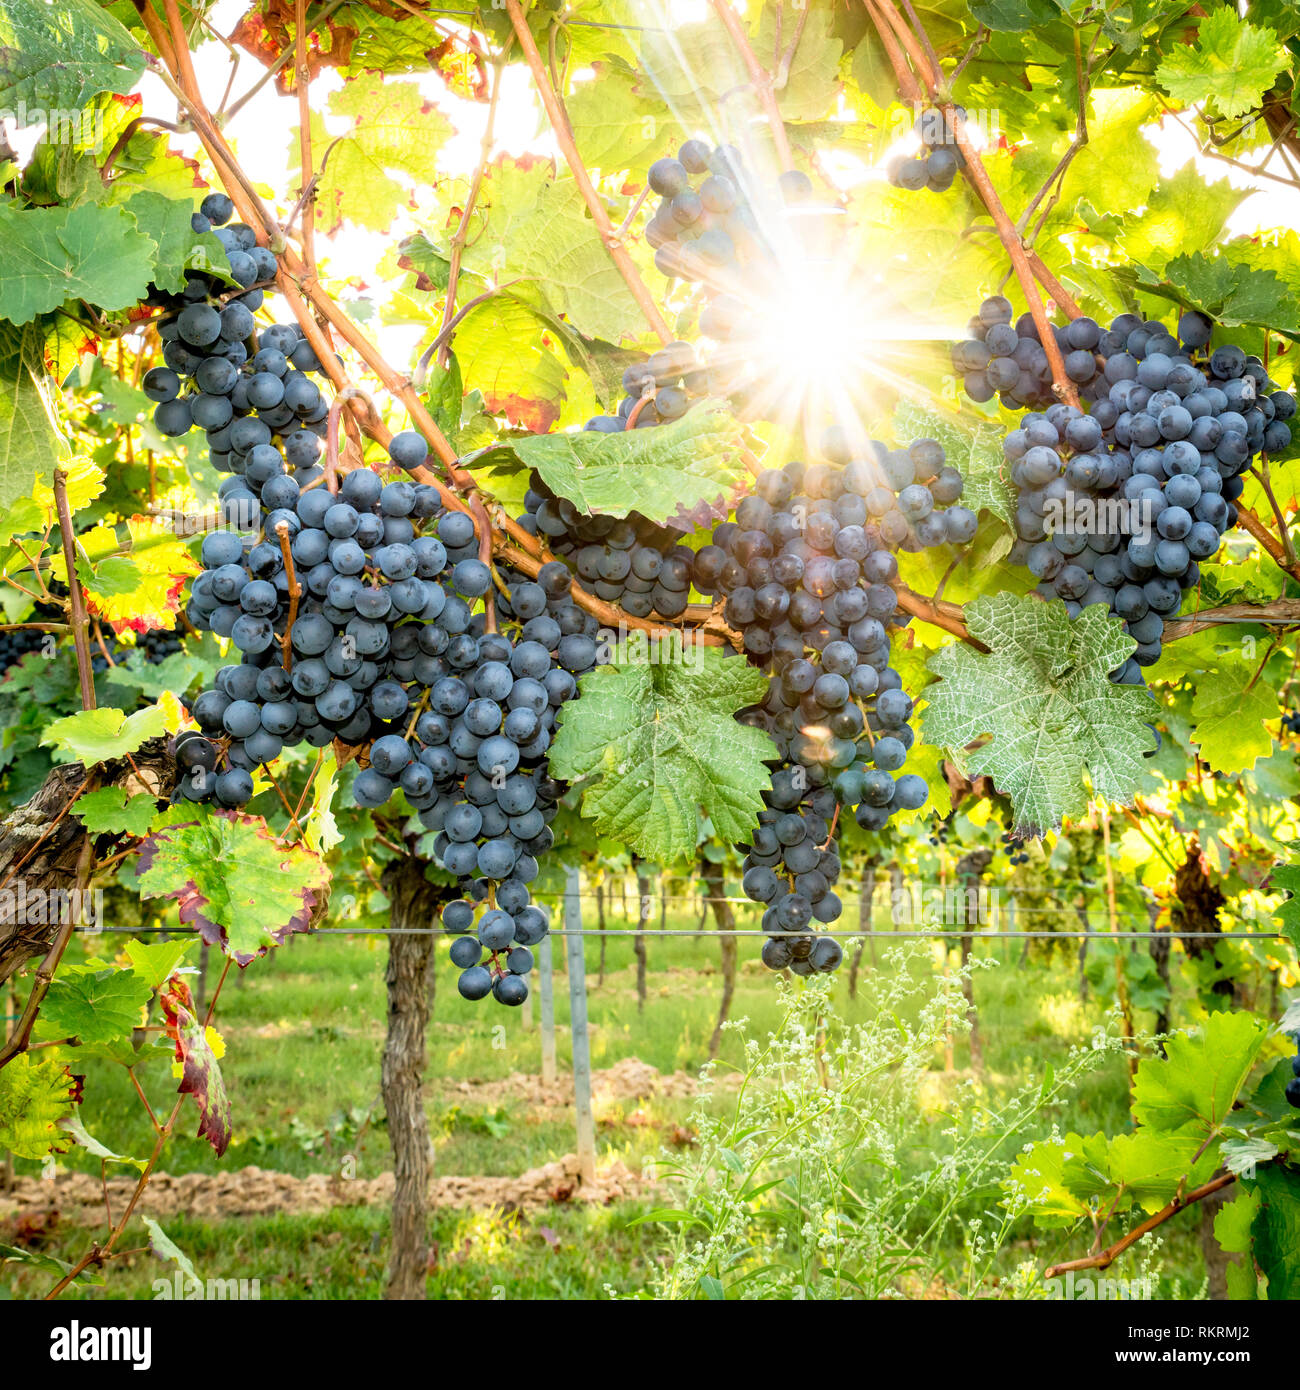 Les raisins bleus mûrs pendent dans l'éclairage direct du soleil sur la brousse Banque D'Images